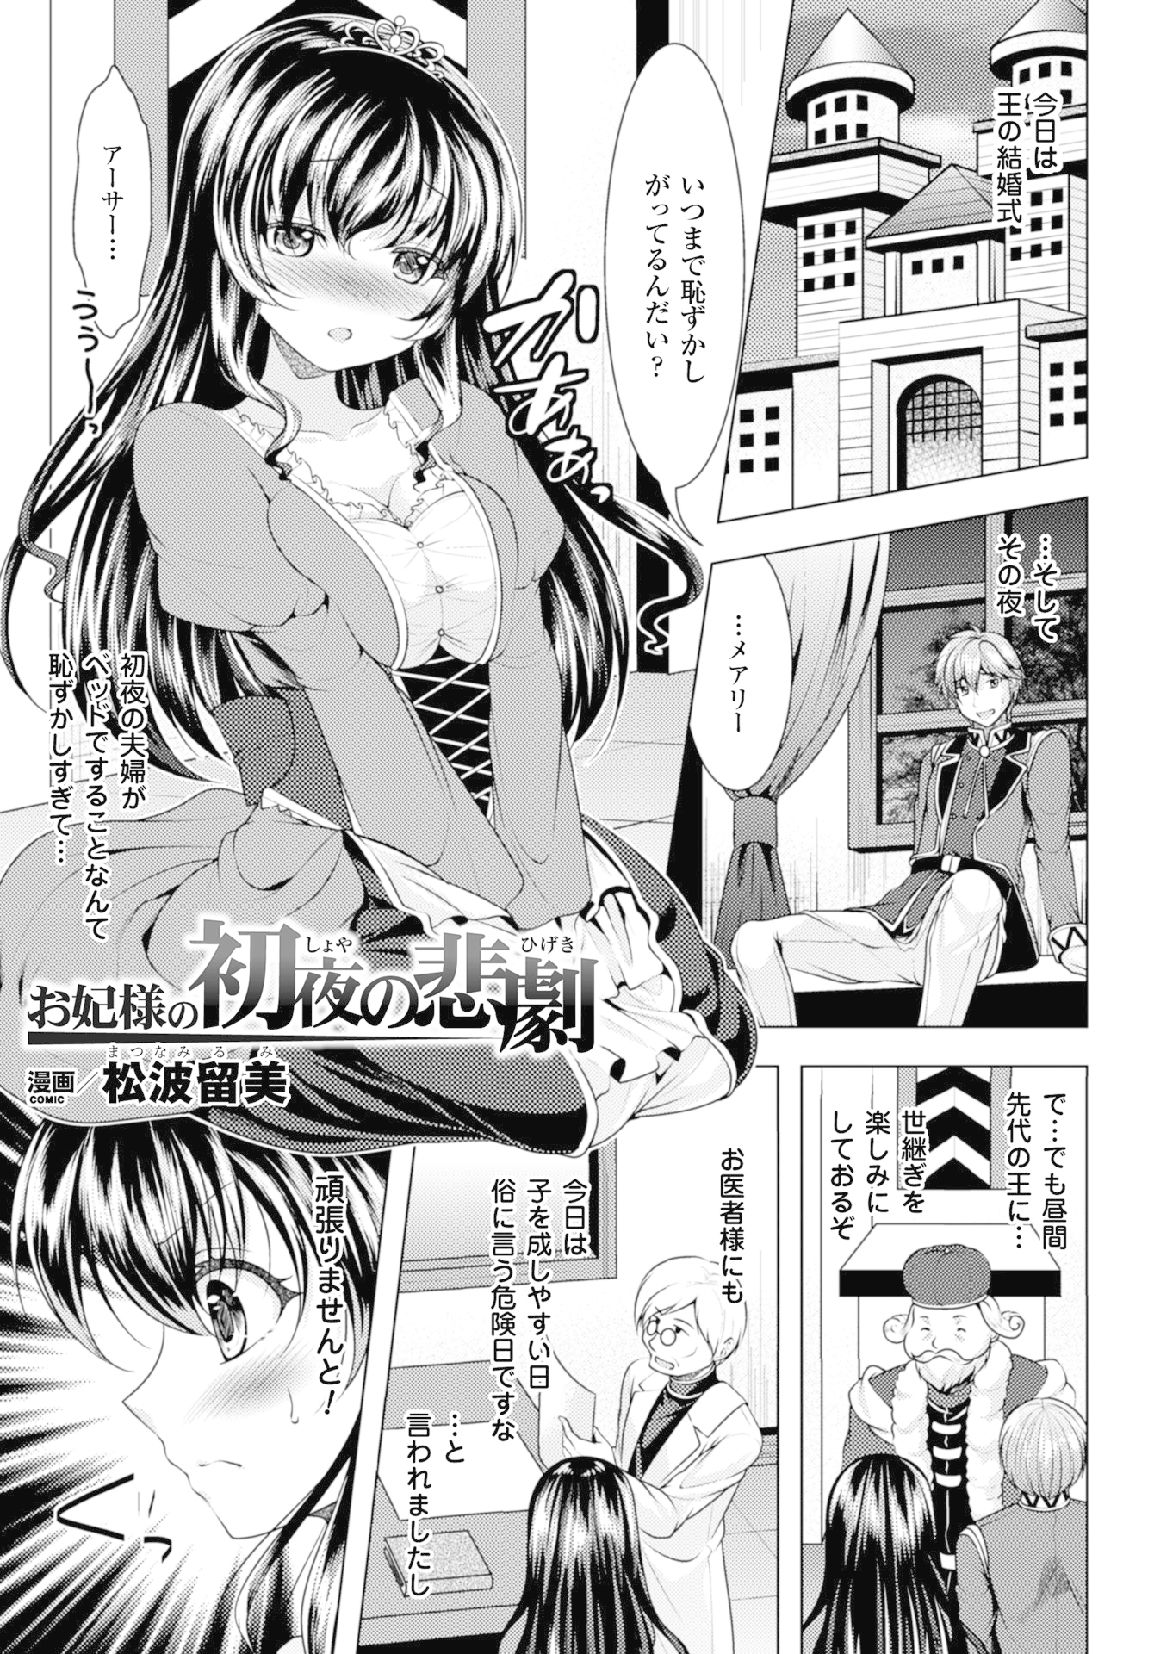 2Dコミックマガジン「射精にちつないしゃせいさる女達」Vol。 2